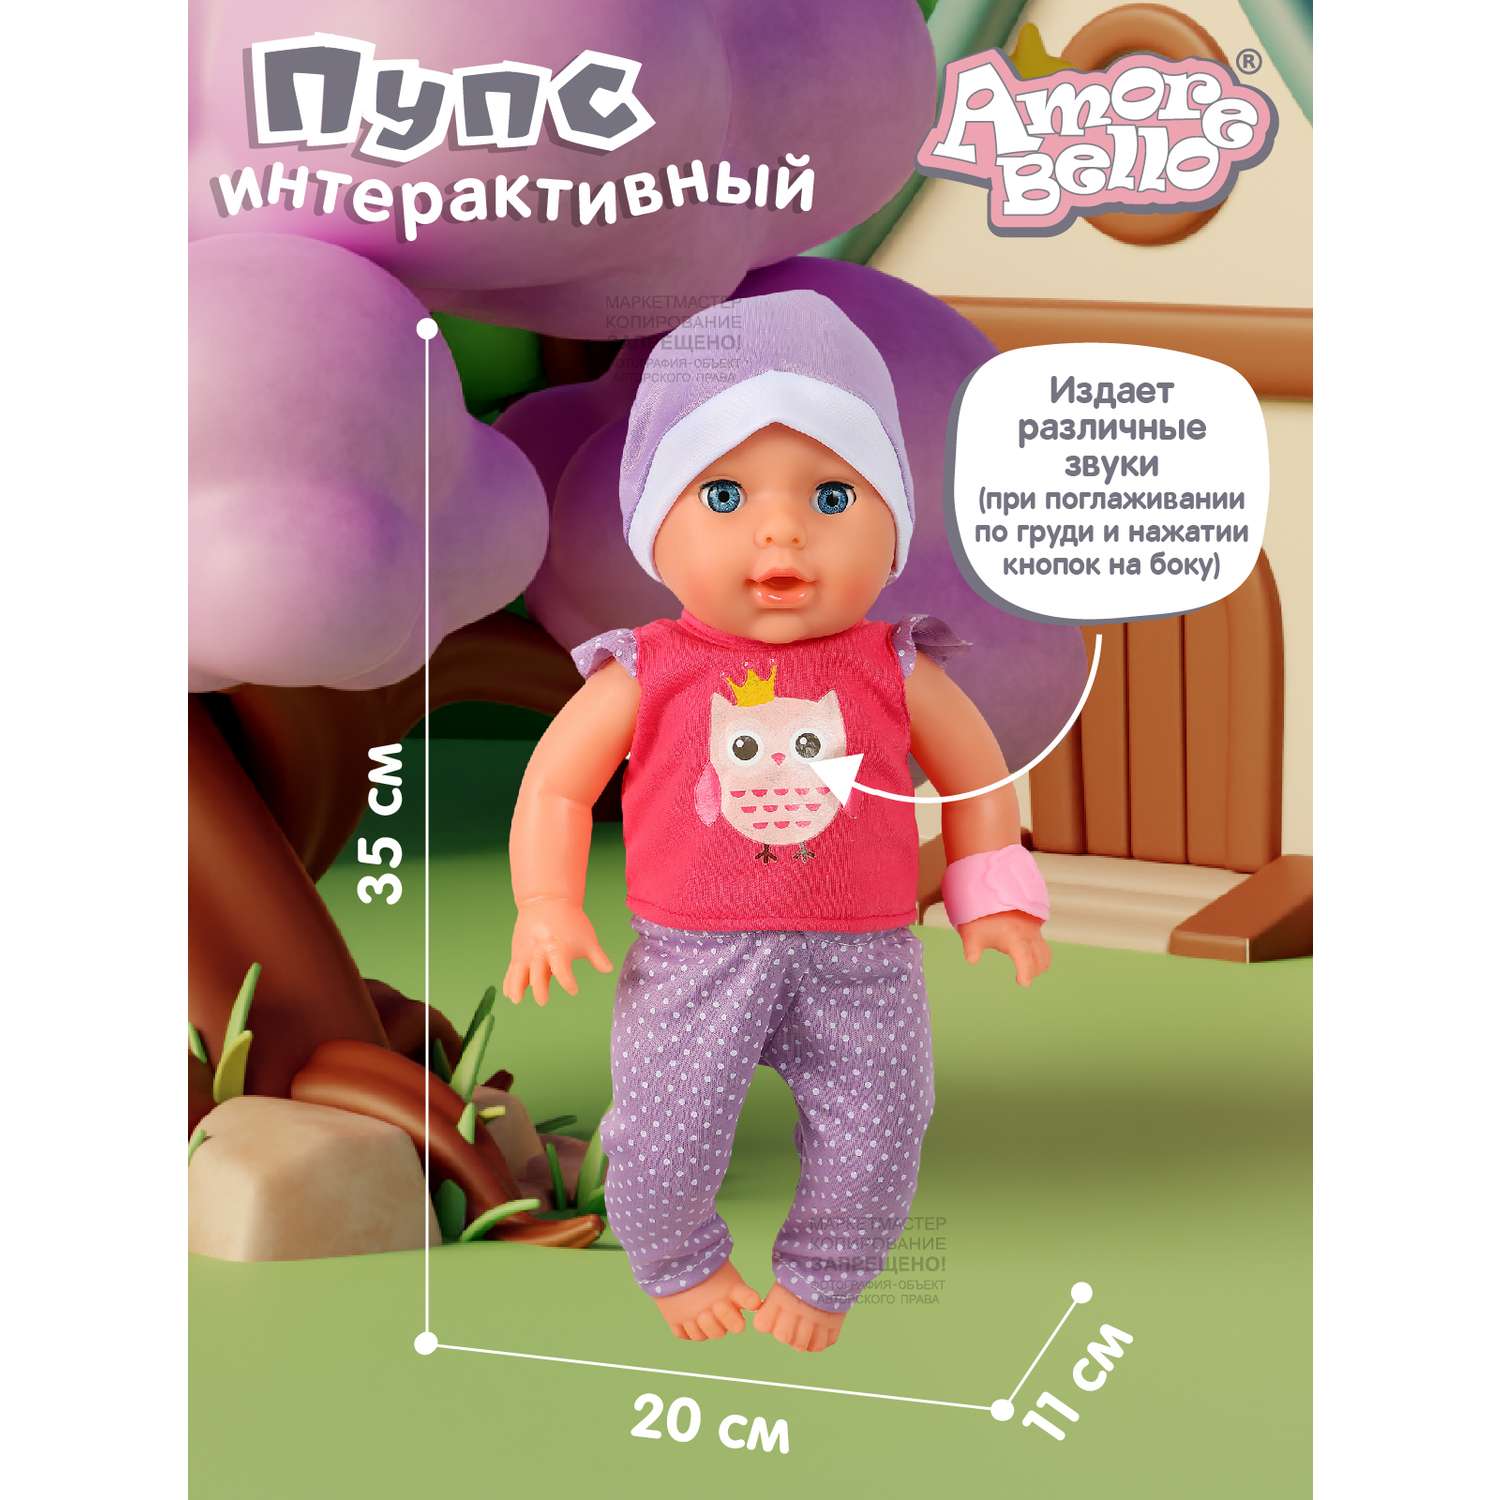 Кукла пупс AMORE BELLO интерактивный на русском языке реагирует на прикосновения пьет писает засыпает JB0211581 - фото 8